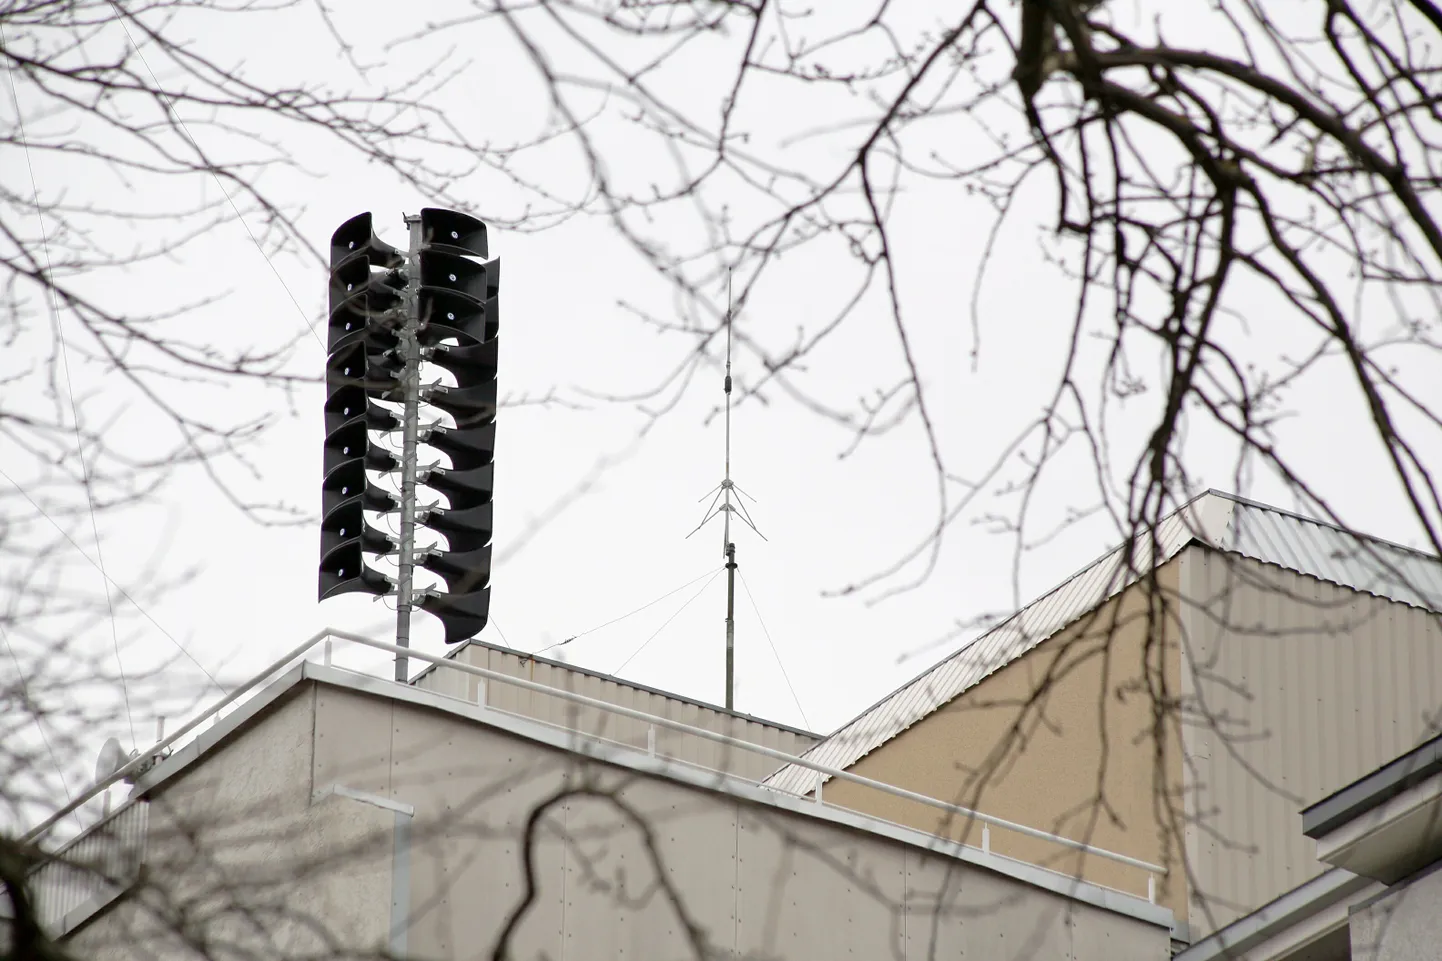 Pildil hoiatussüsteem taastusravikeskus Estonia katusel.